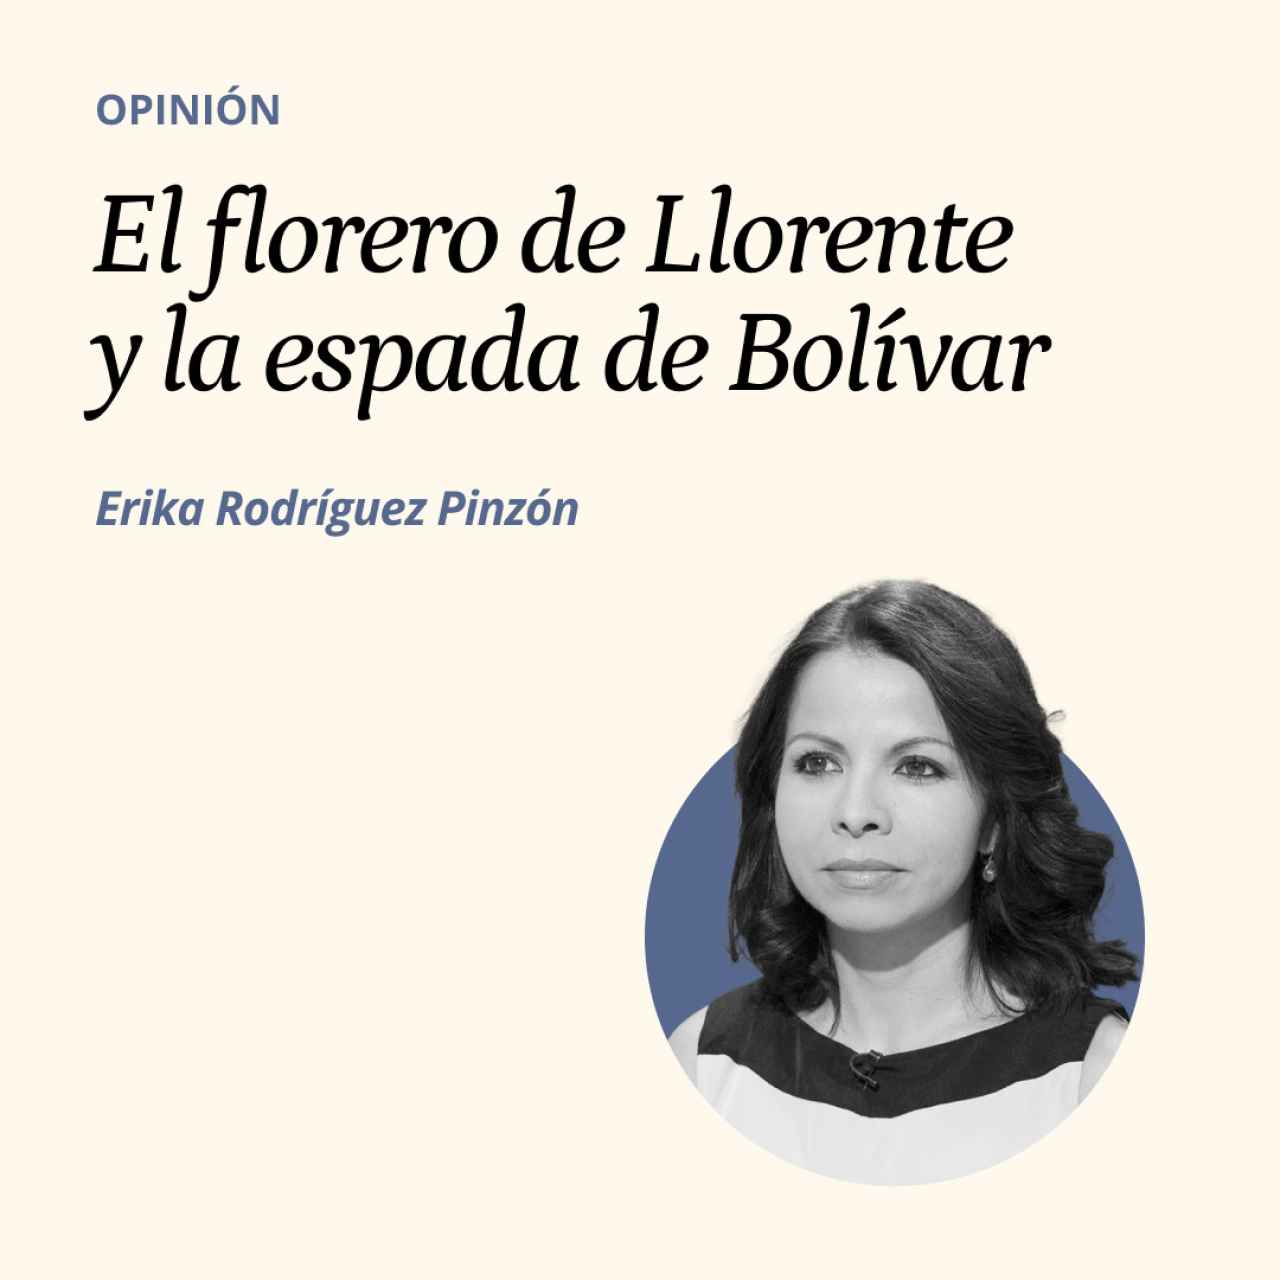 El florero de Llorente y la espada de Bolívar